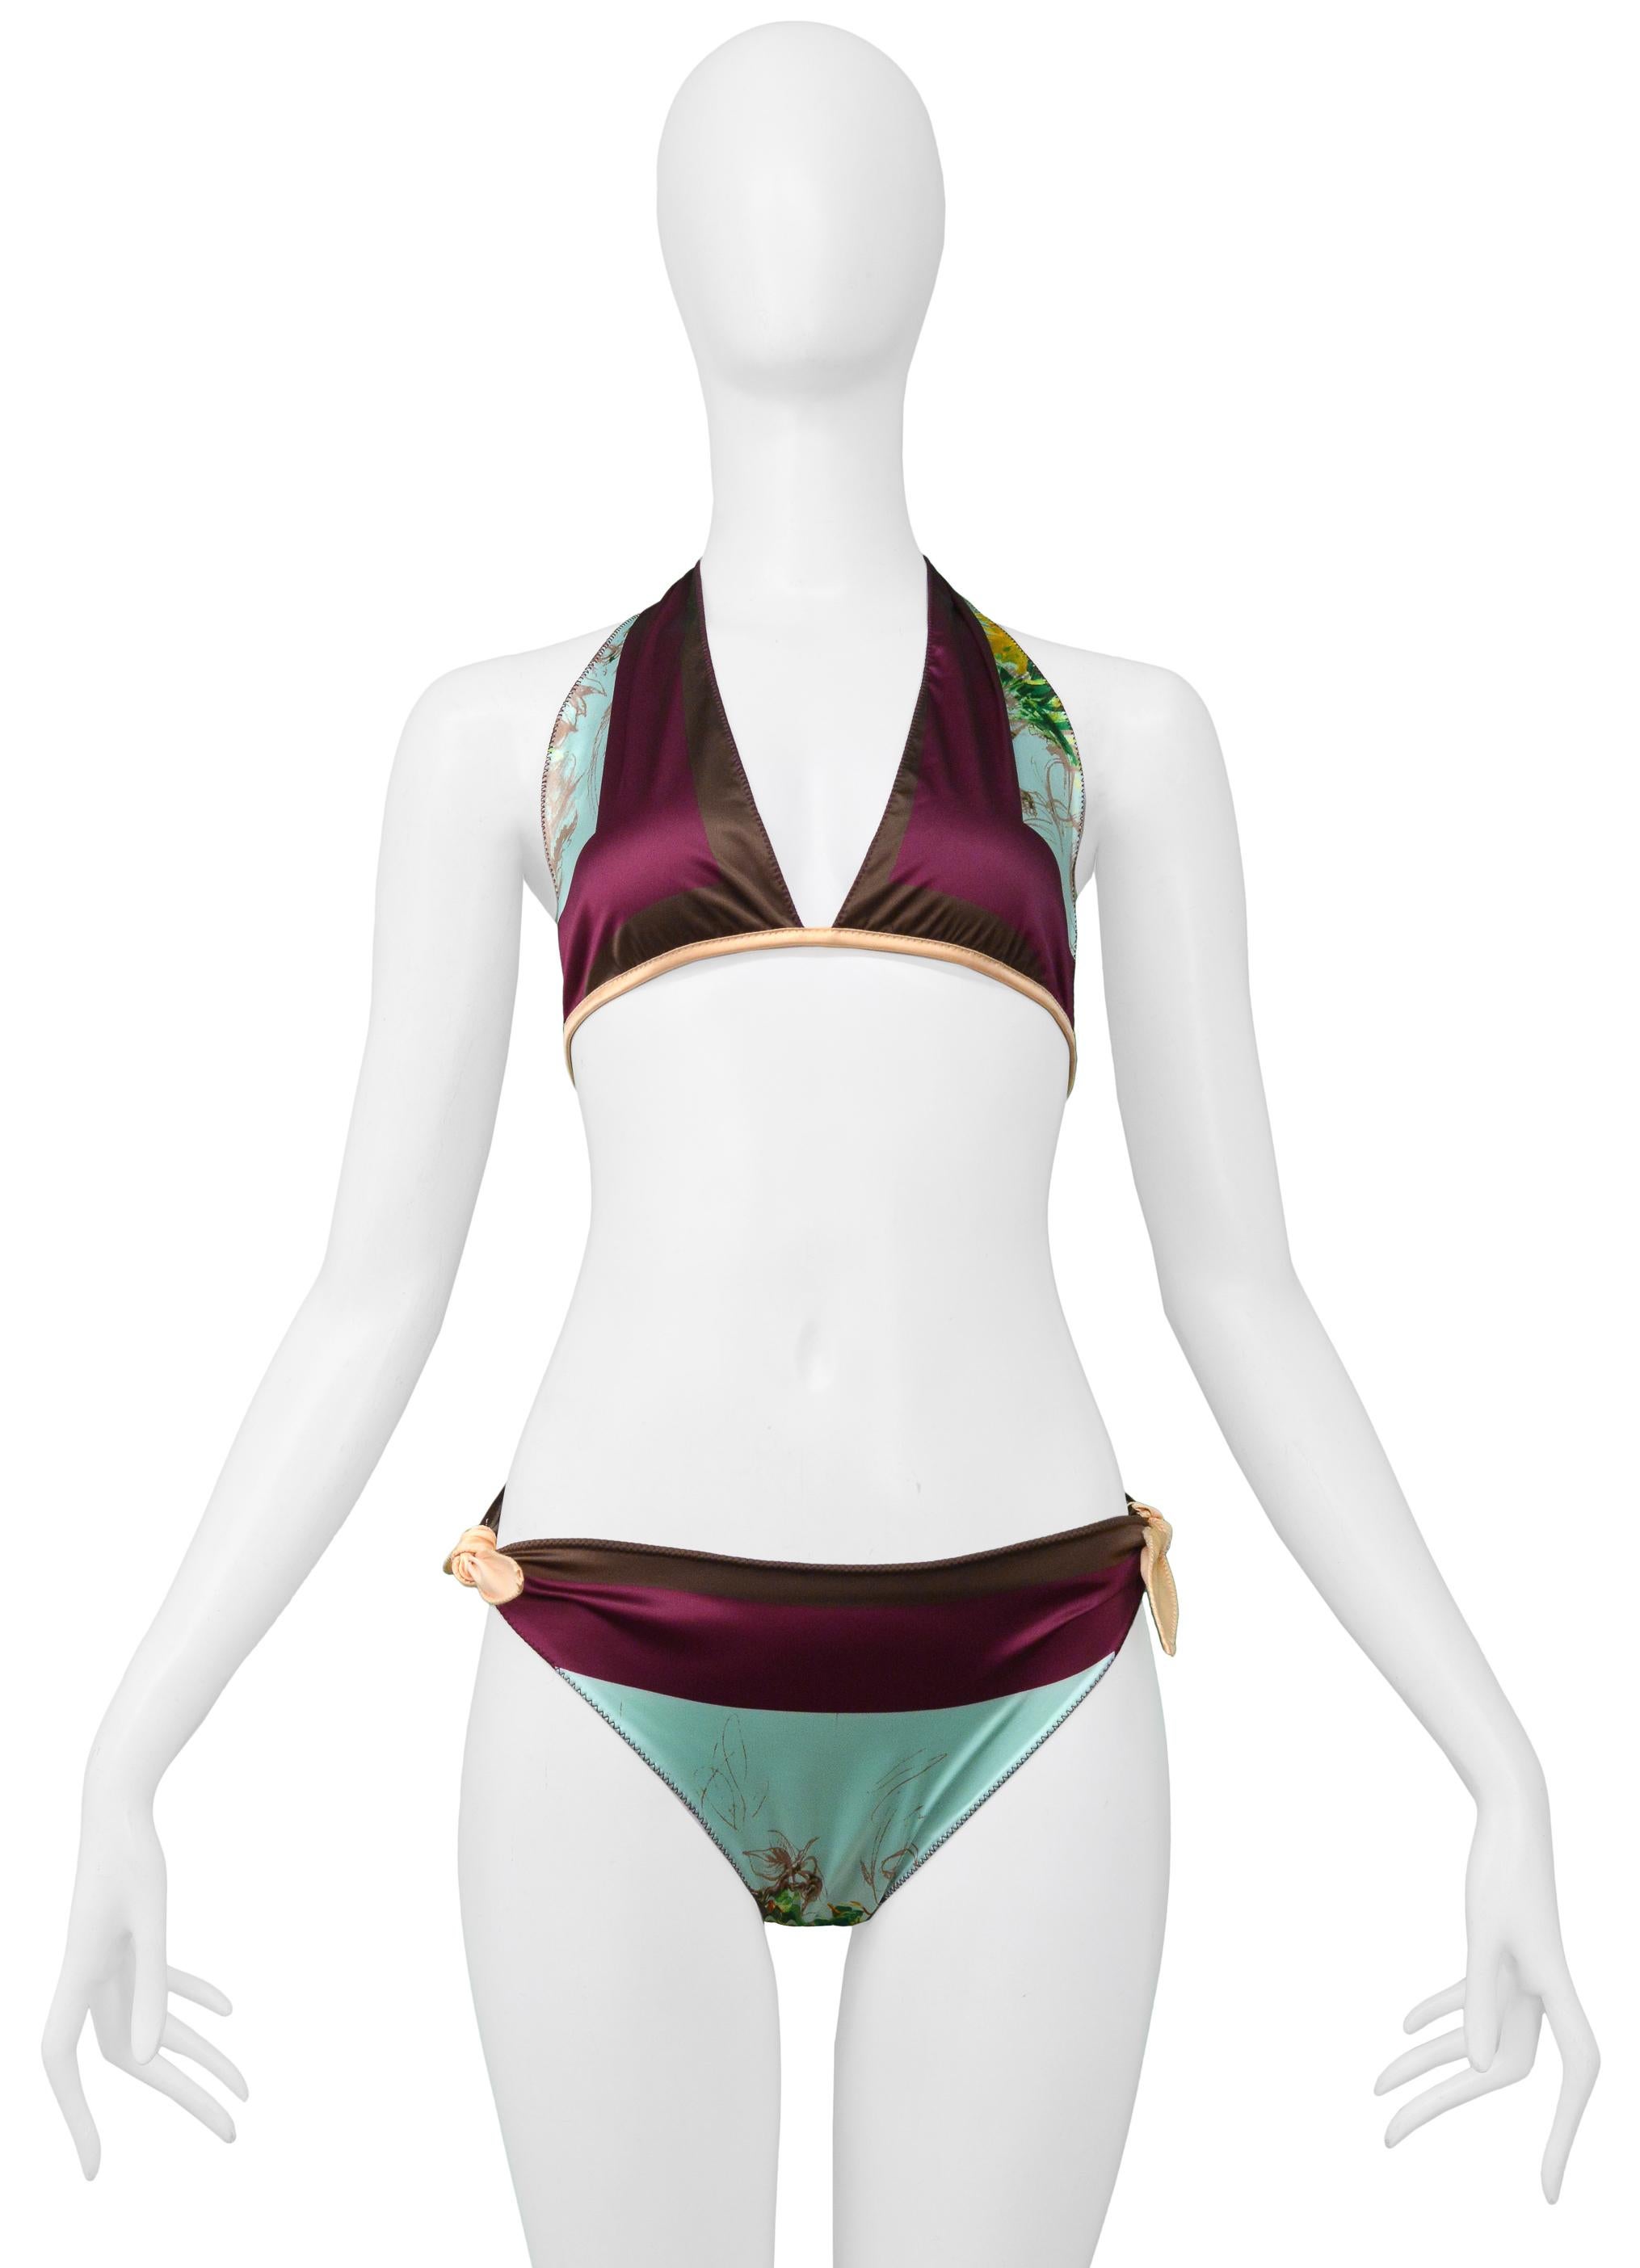 Resurrection Vintage a le plaisir de vous proposer un bikini vintage Jean Paul Gaultier en satin multicolore avec un haut dos nu avec un lien dans le dos et un fermoir en métal, et un bas de bikini avec des liens sur les côtés.

Jean Paul